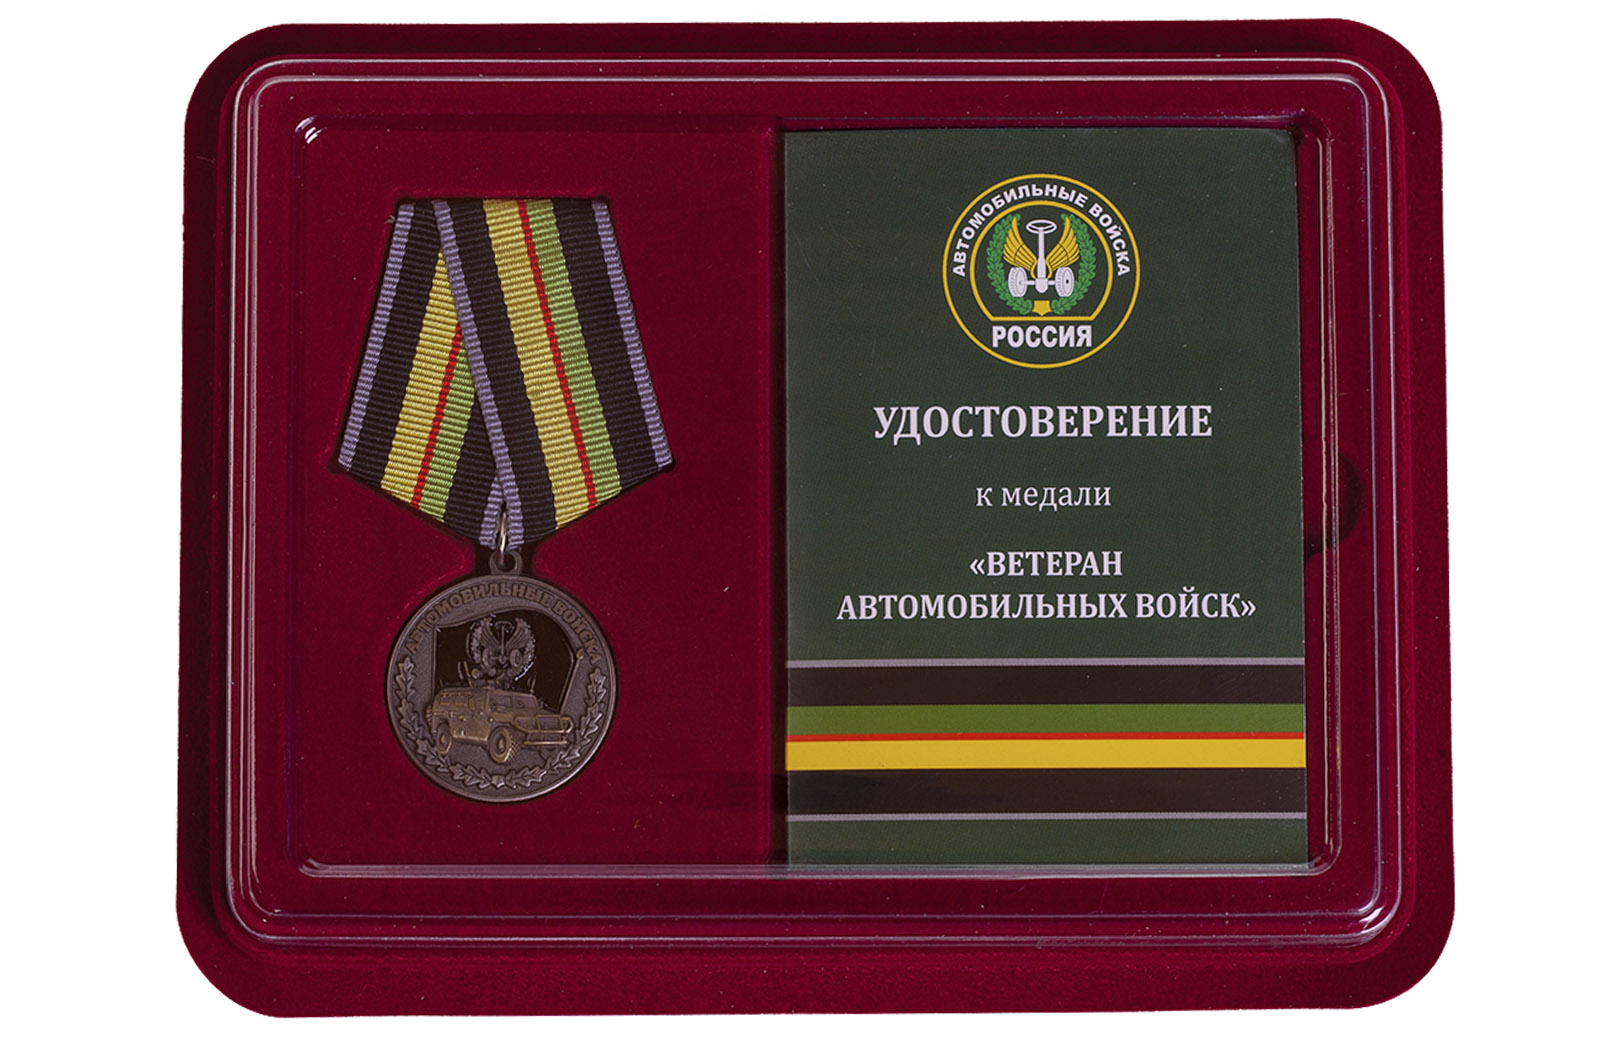 Купить памятную медаль Ветеран автомобильных войск по лучшей цене